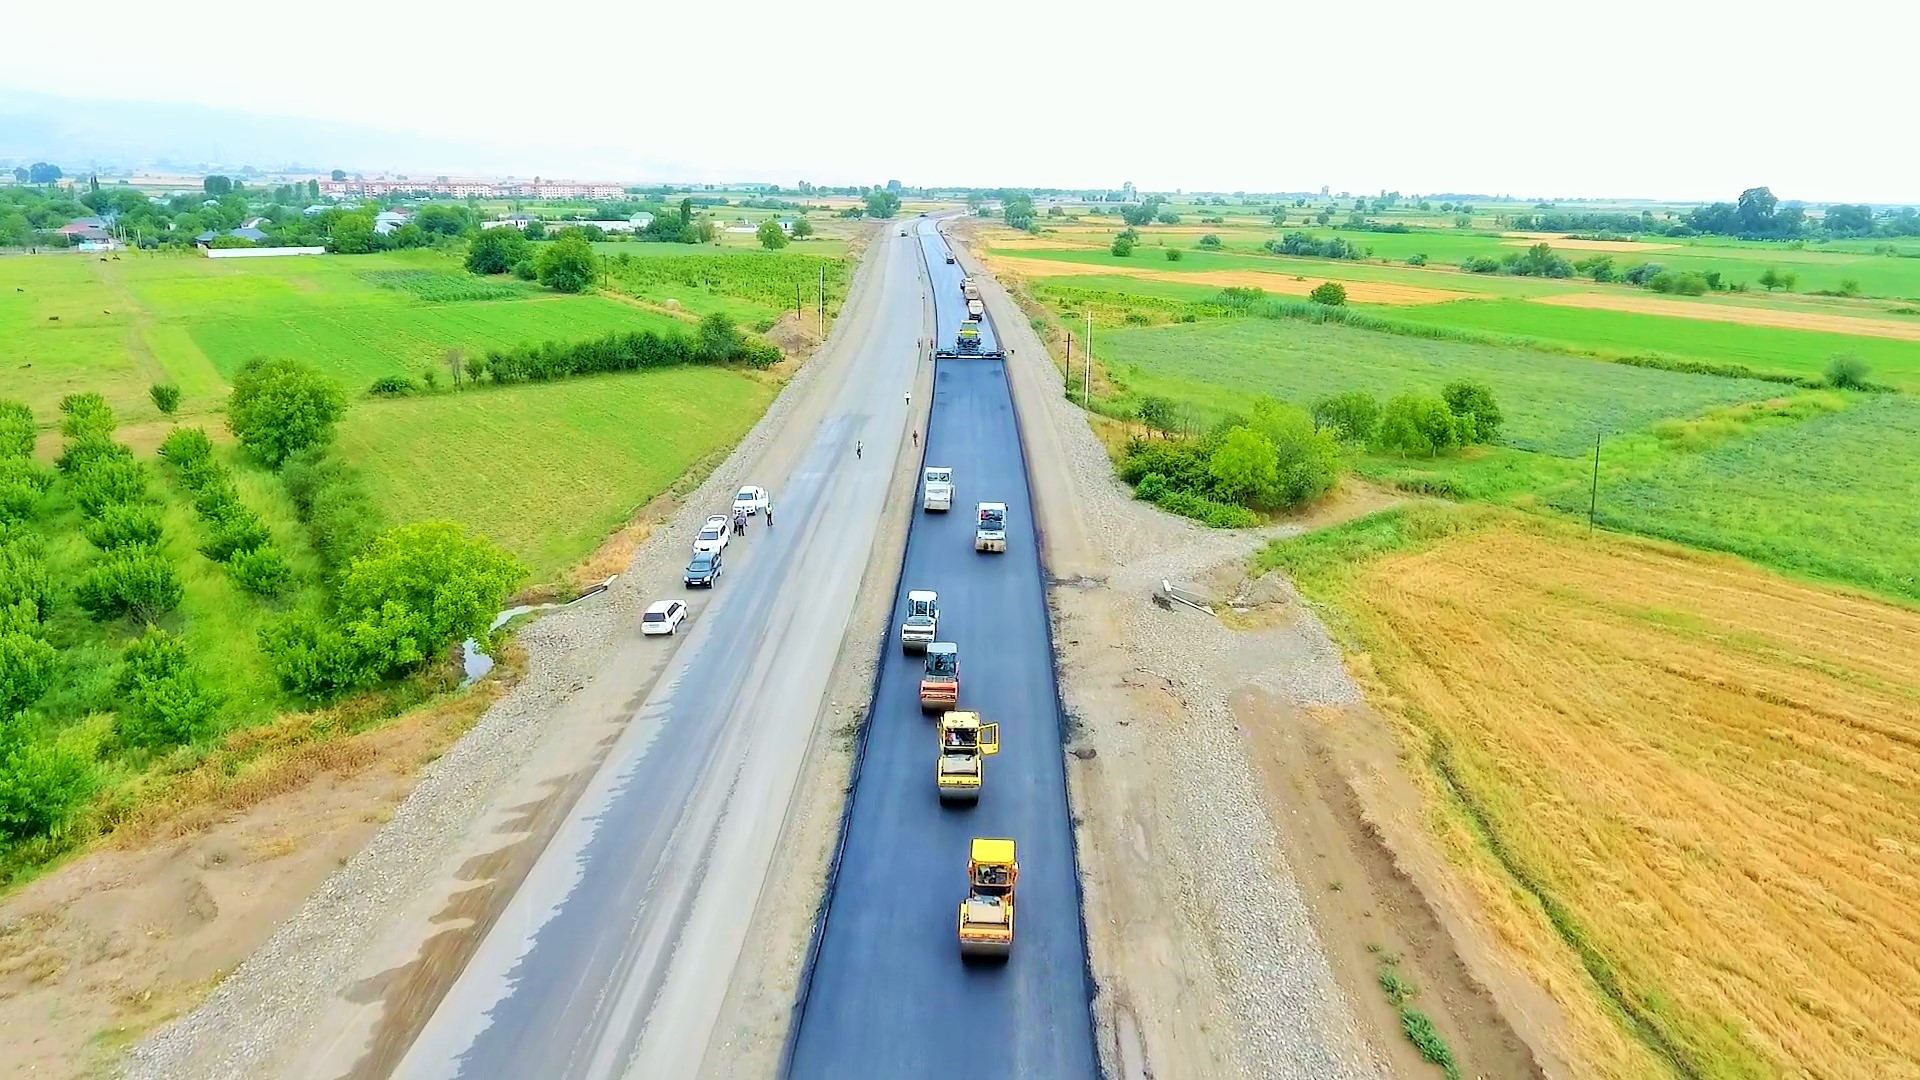 Gəncə-Qazax-Gürcüstan sərhədi yolunun 130 km-lik hissəsinin genişləndirilməsi gələn il yekunlaşacaq (FOTO)